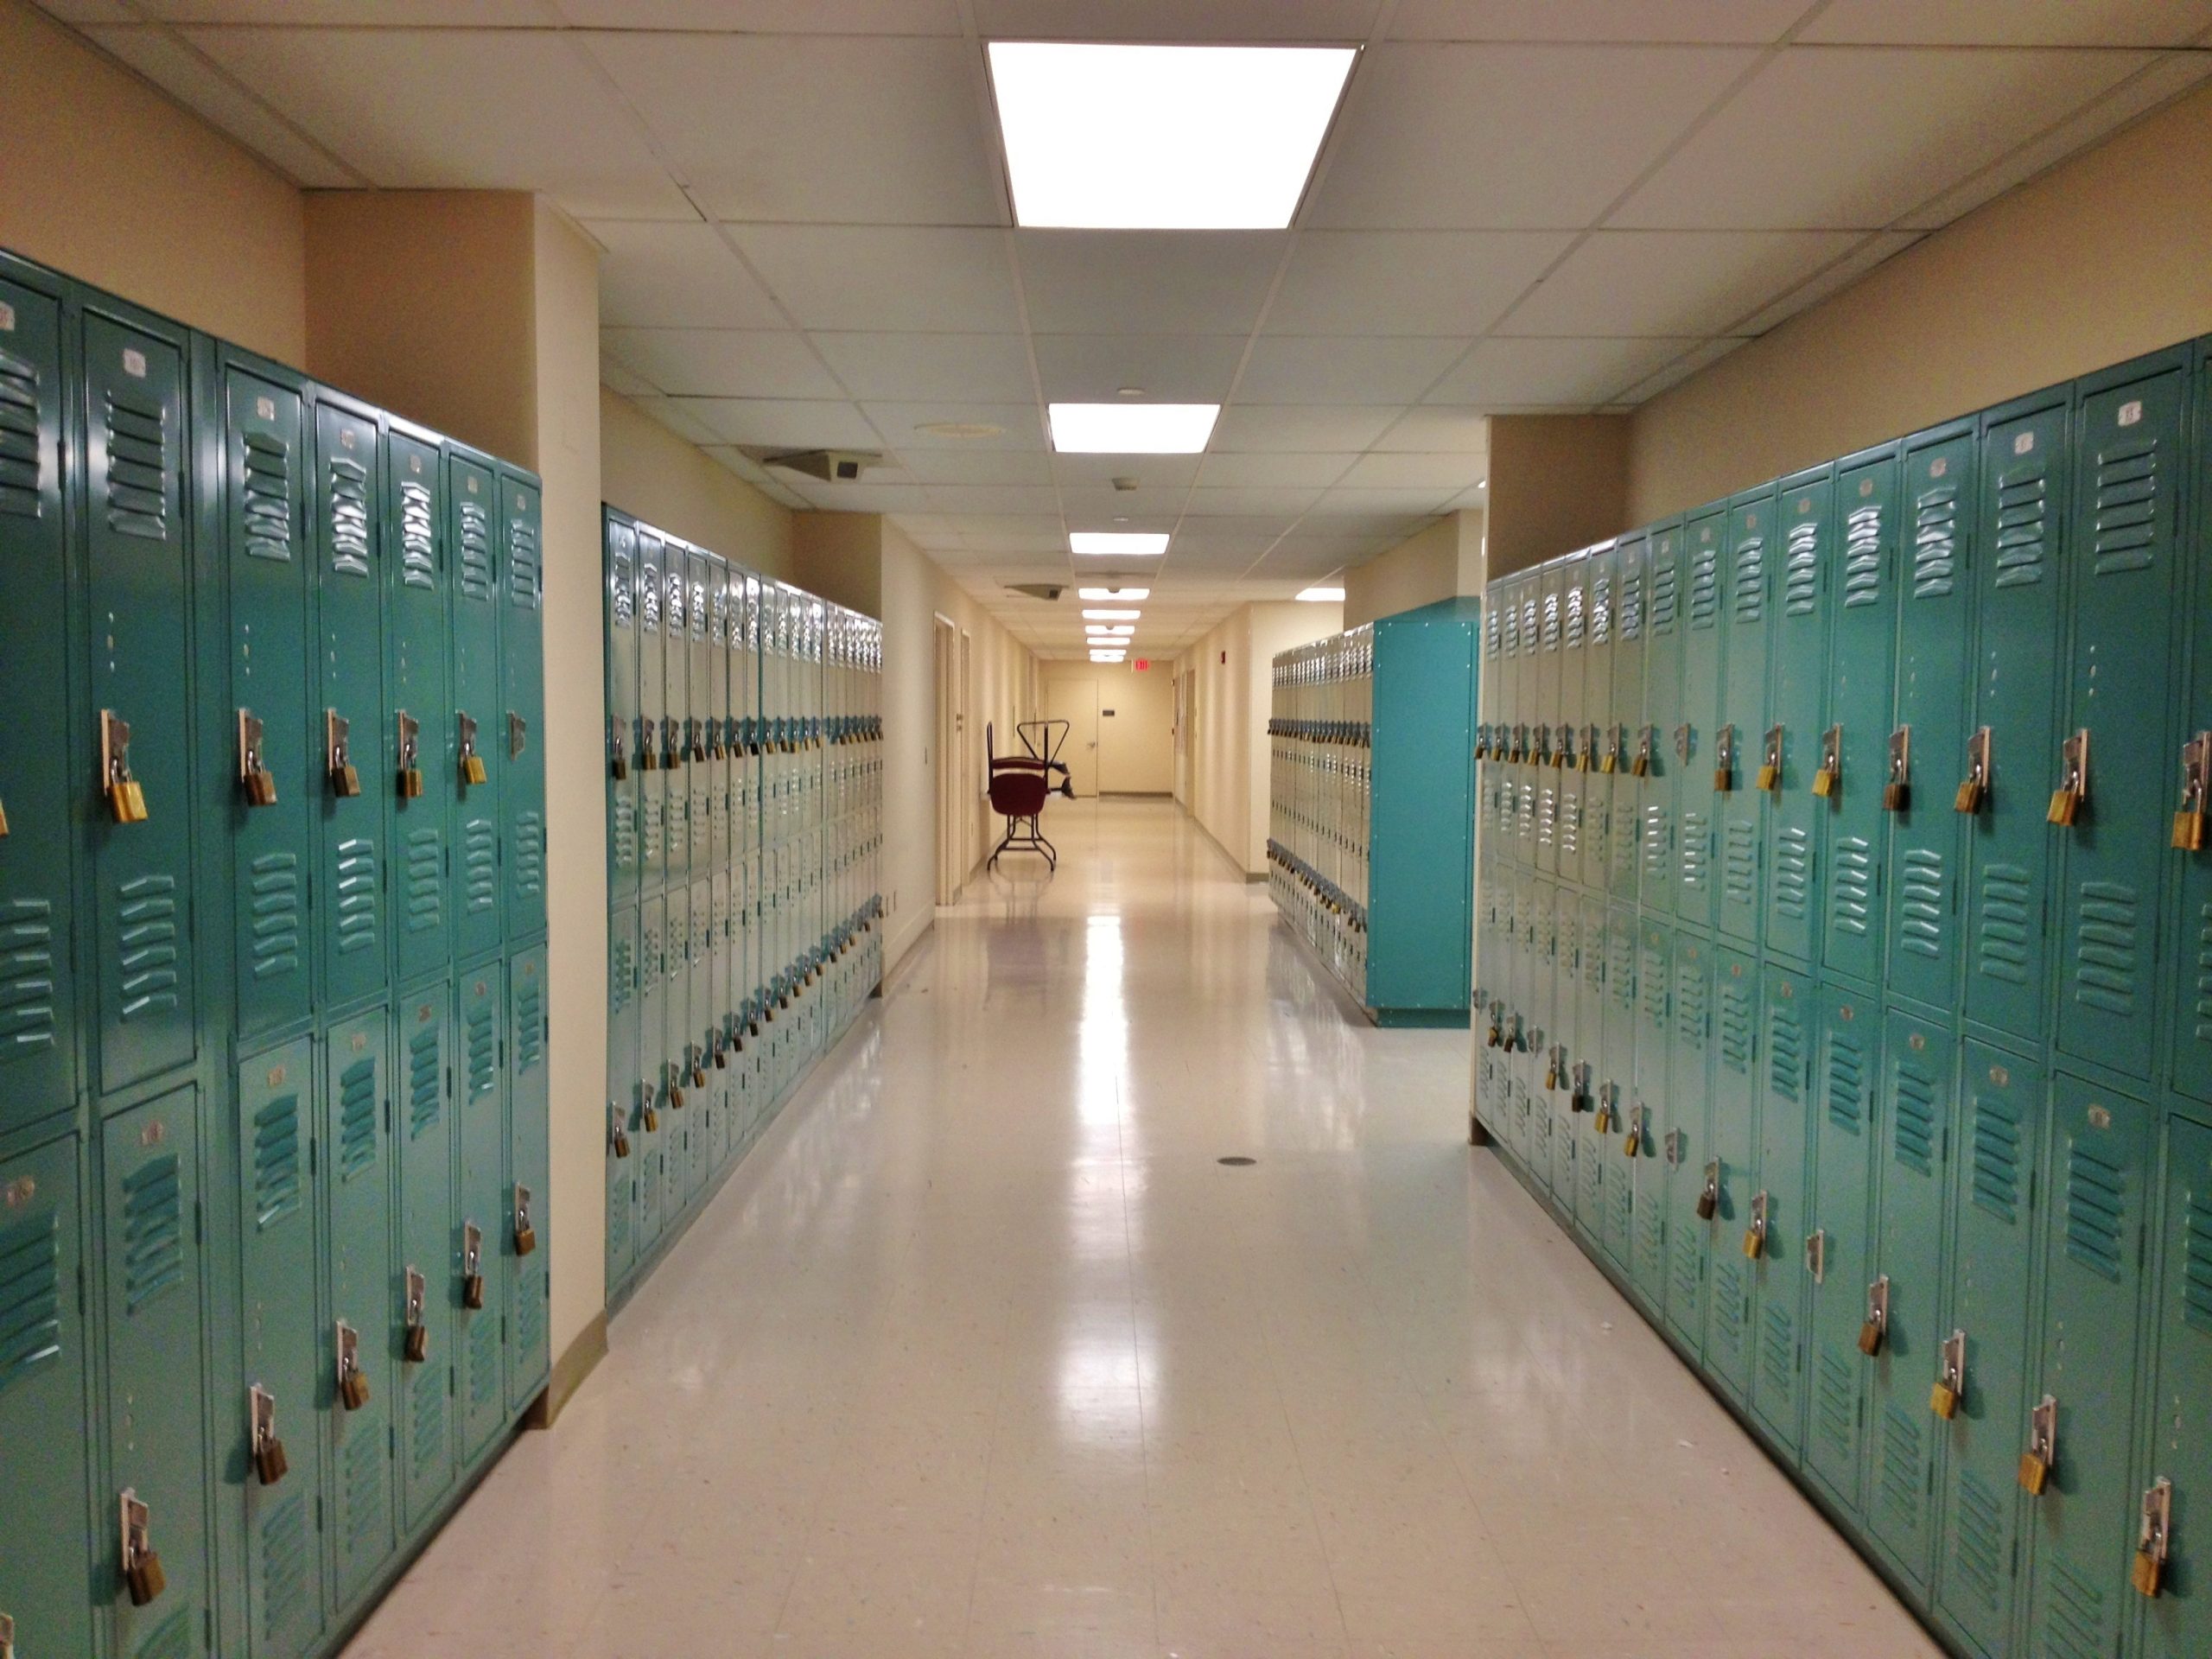 Während Corona rausgeschmissen: 430 Schüler:innen verlieren ihren Schulplatz